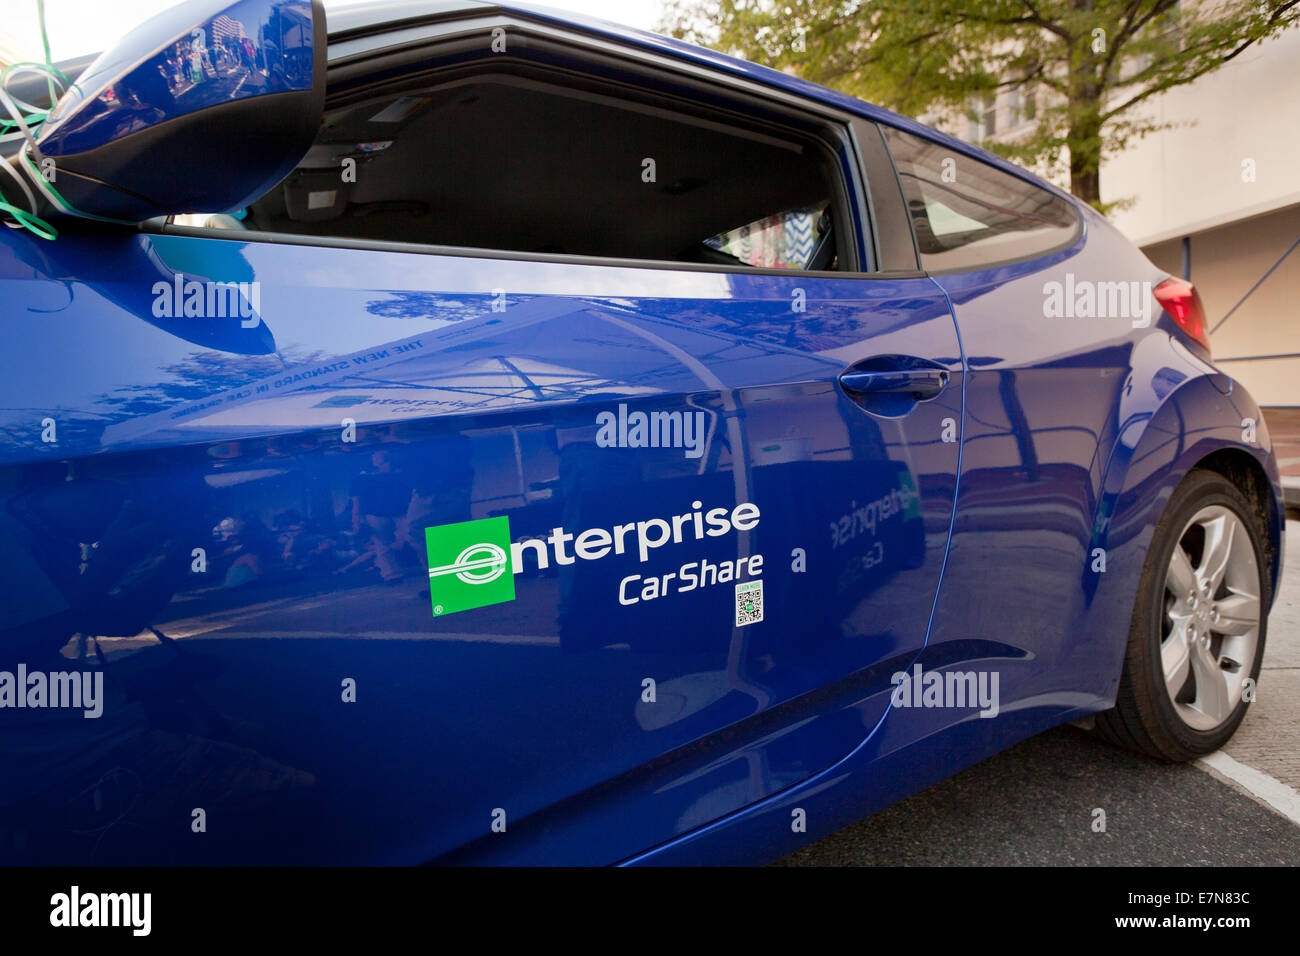 Enterprise CarShare vehicle - USA Stock Photo